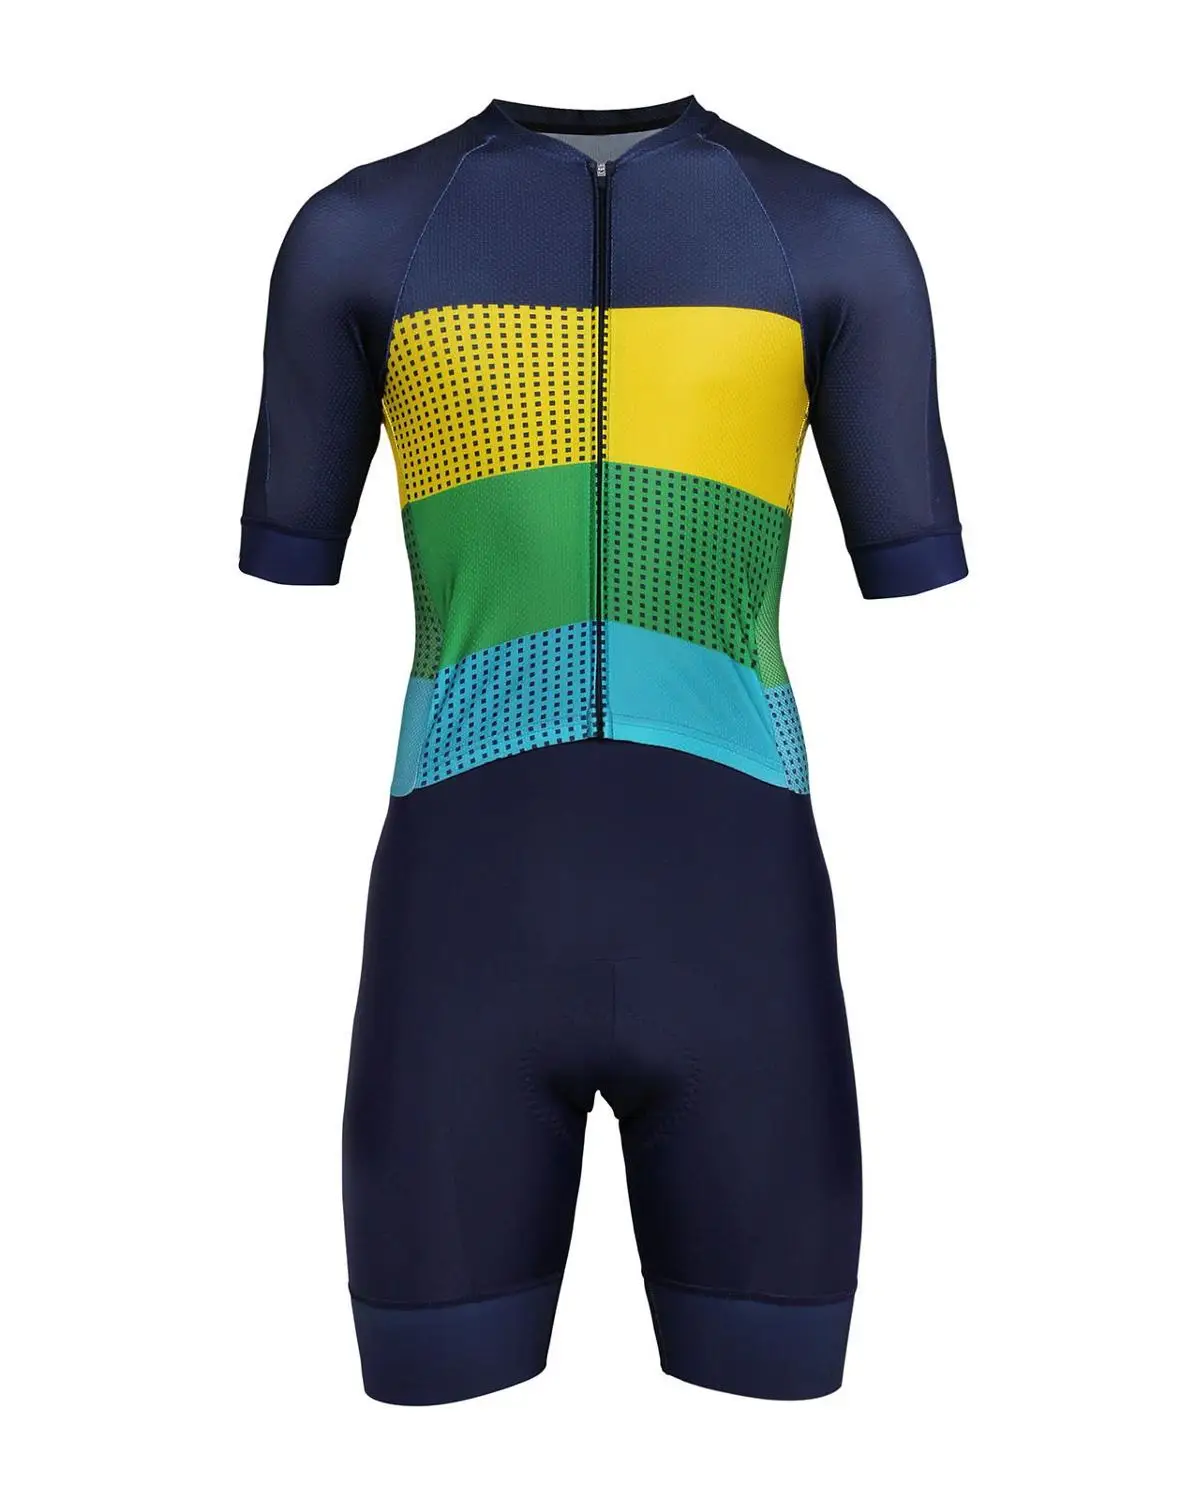 Для мужчин про супер Speedsuit велокостюм Для Мужчин's для триатлона, занятий спортом Костюмы Велосипедная форма комплект Ропа де Ciclismo Maillot - Цвет: 1-Pic Color